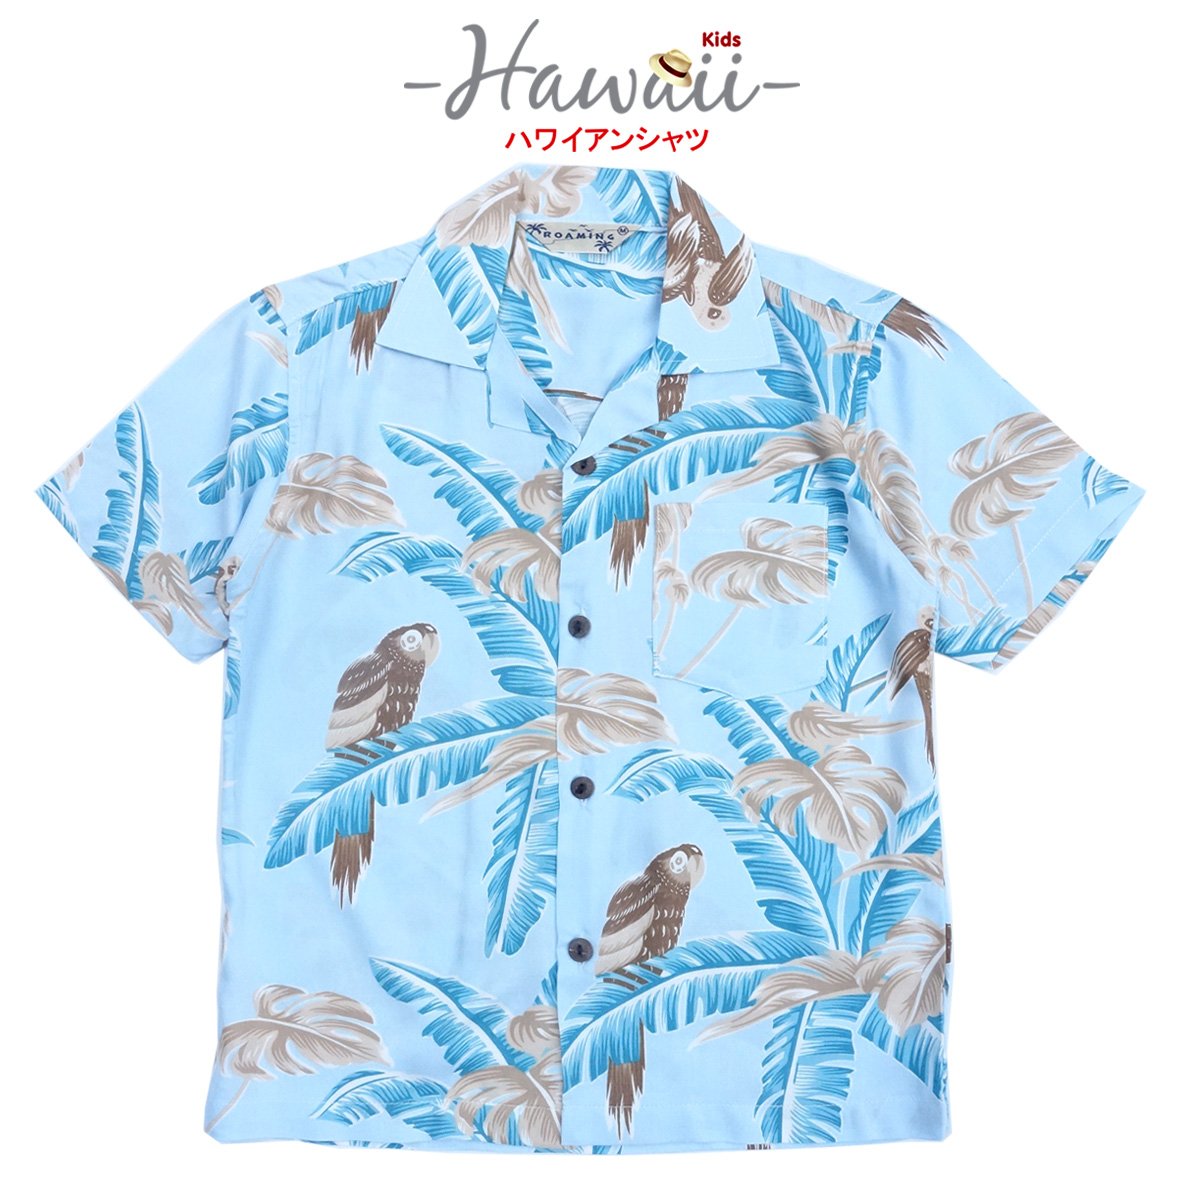 เสื้อฮาวาย เสื้อครอบครัว เด็ก&ผู้ใหญ่ Hawaiian aloha Shirts (Parrot-blue)